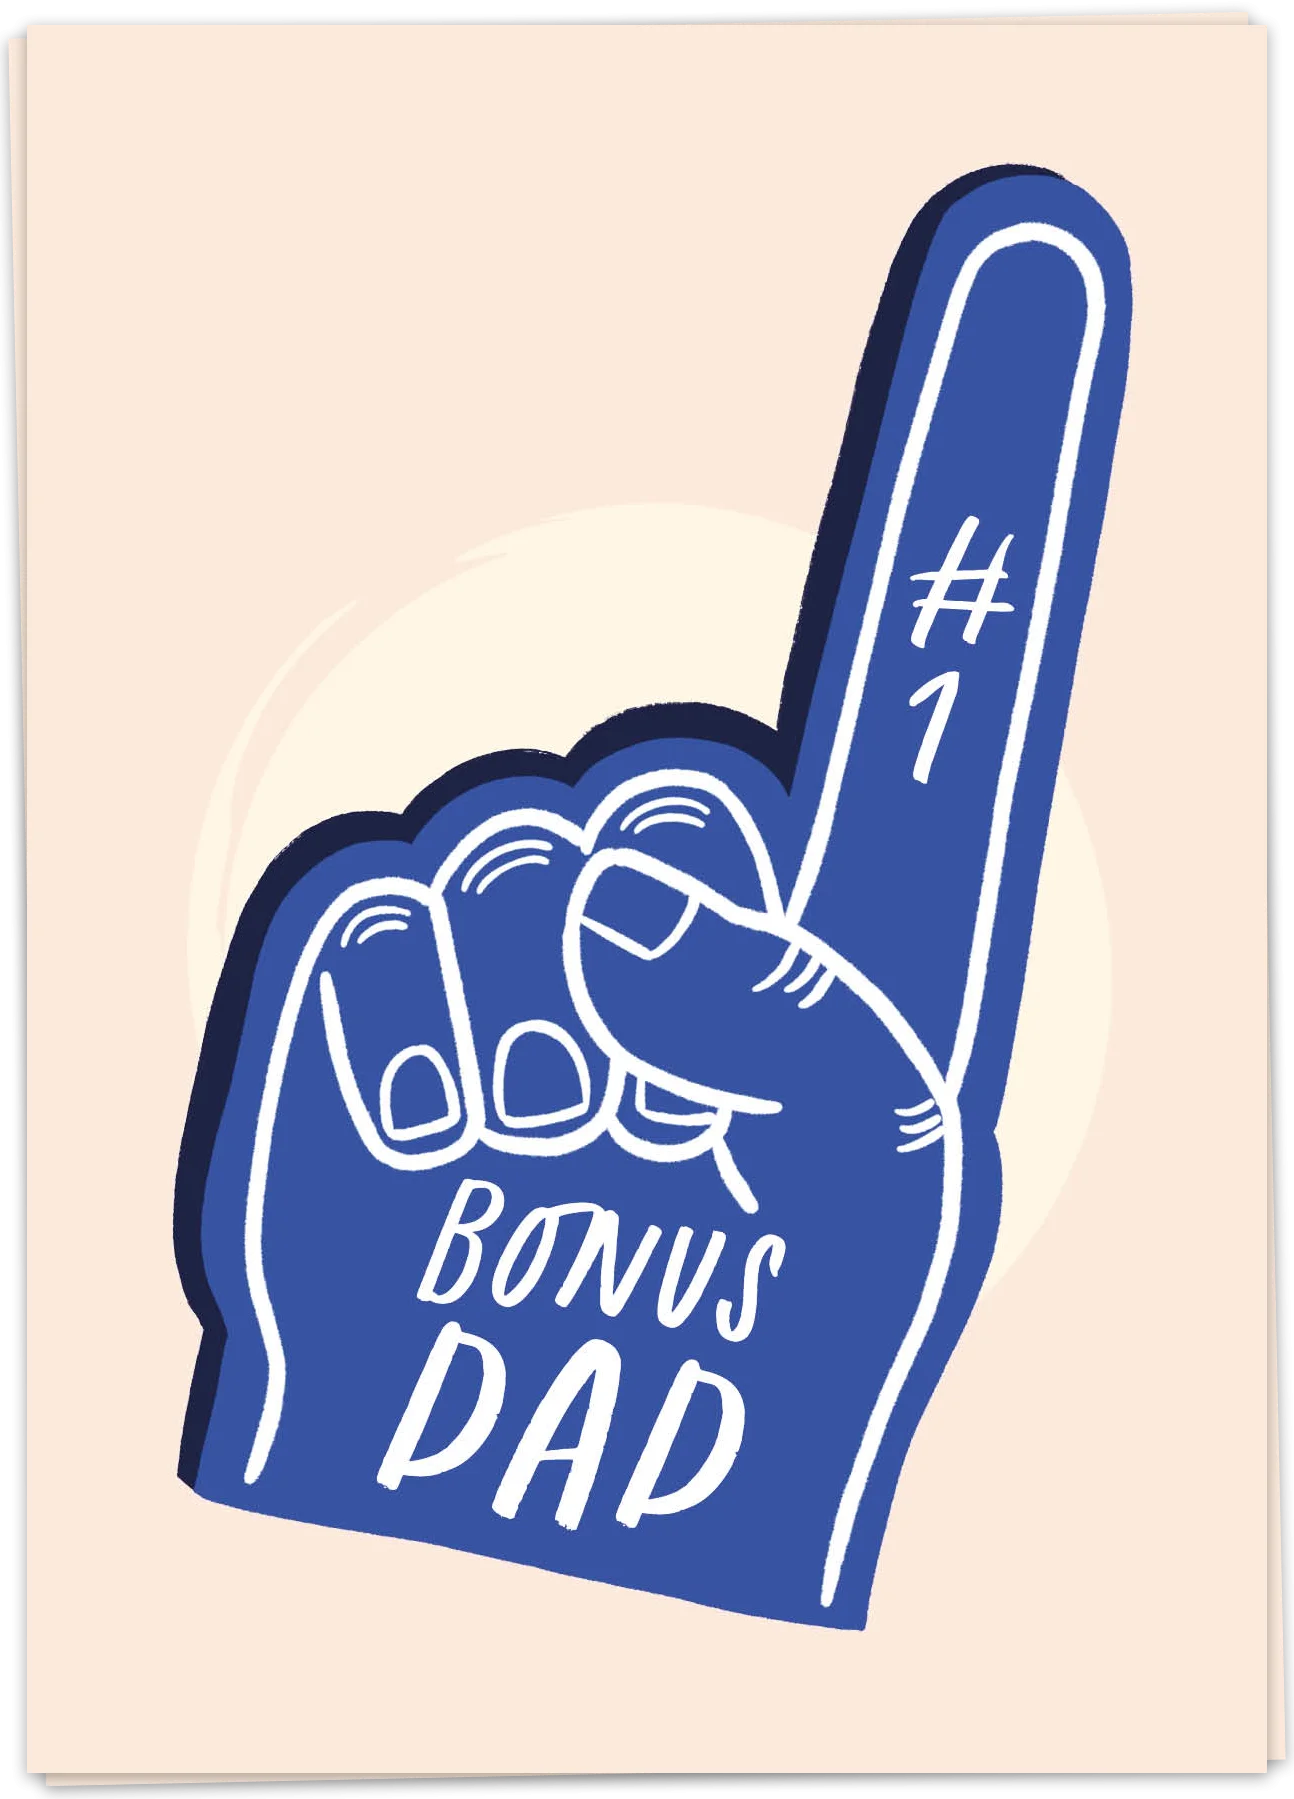 Number one bonus dad